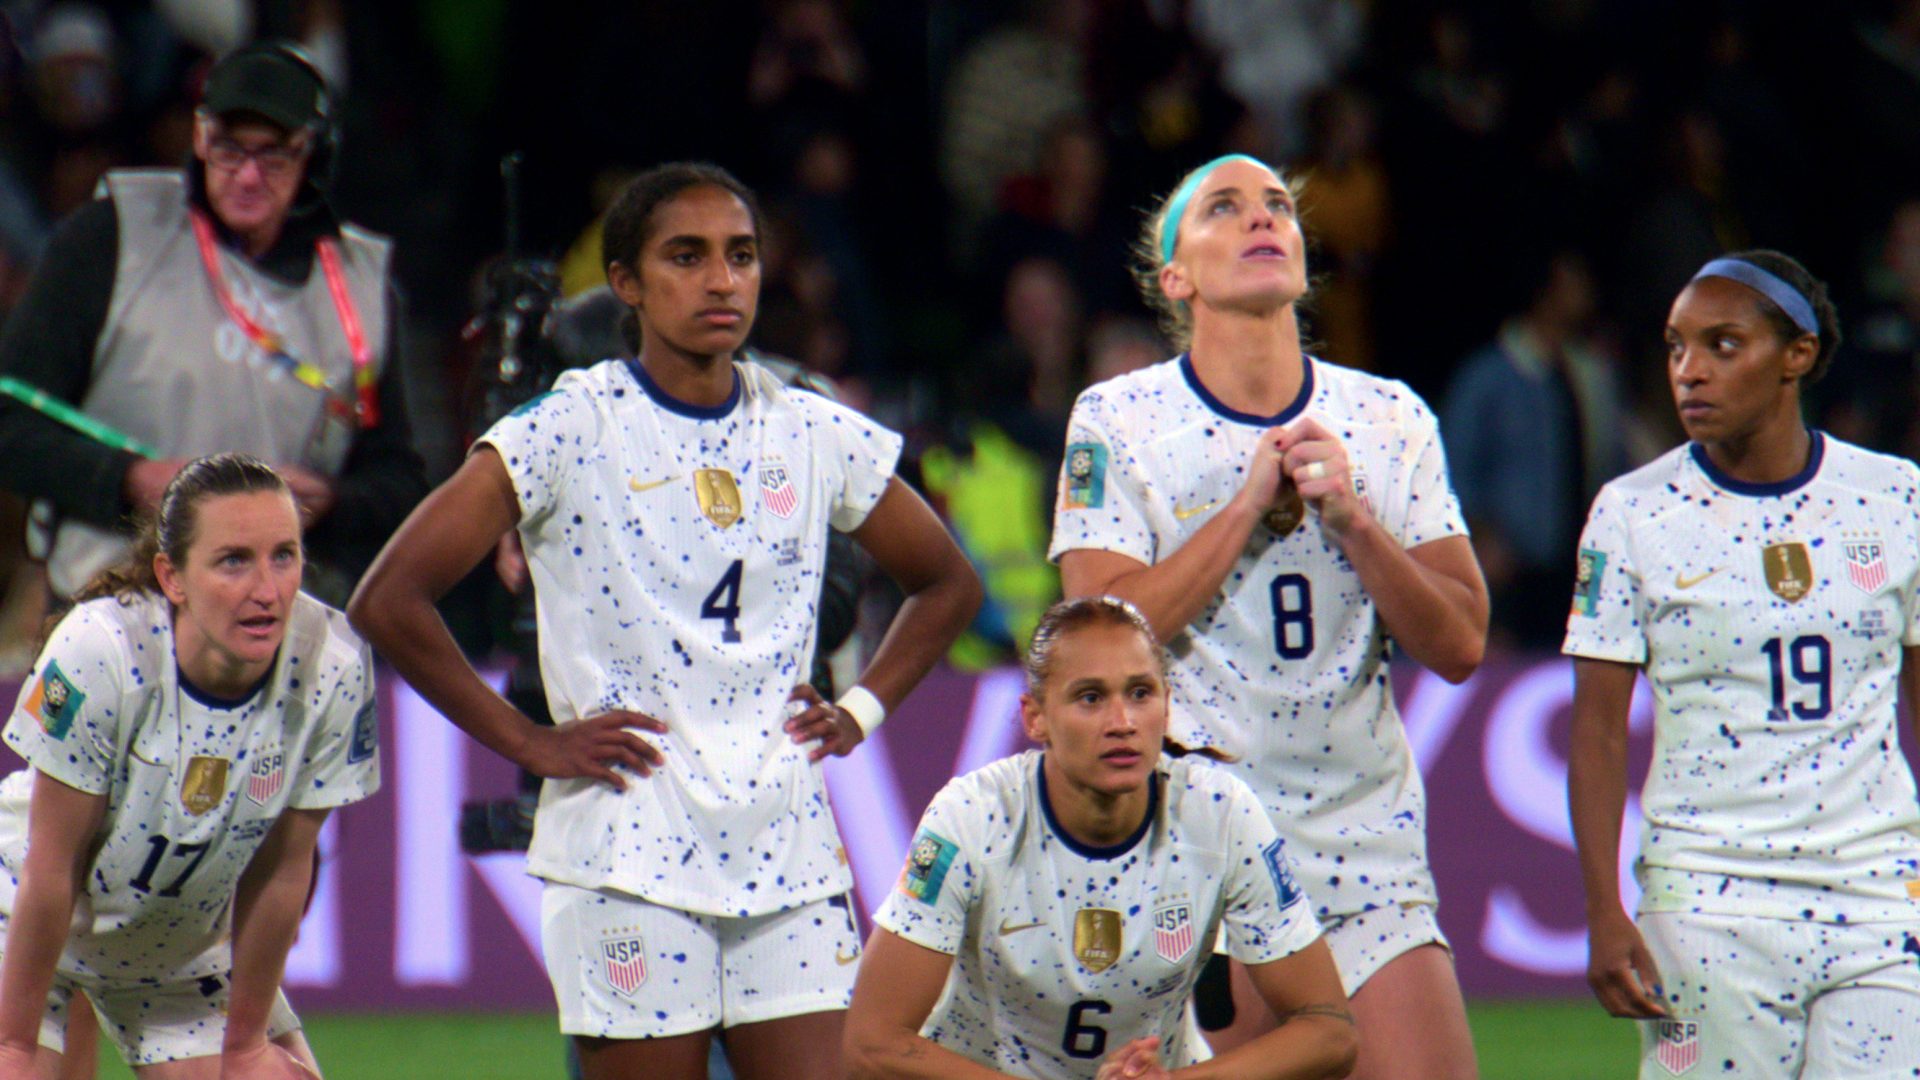 A Seleção Feminina da Copa do Mundo dos EUA: série documental tem reviravolta na história após queda precoce